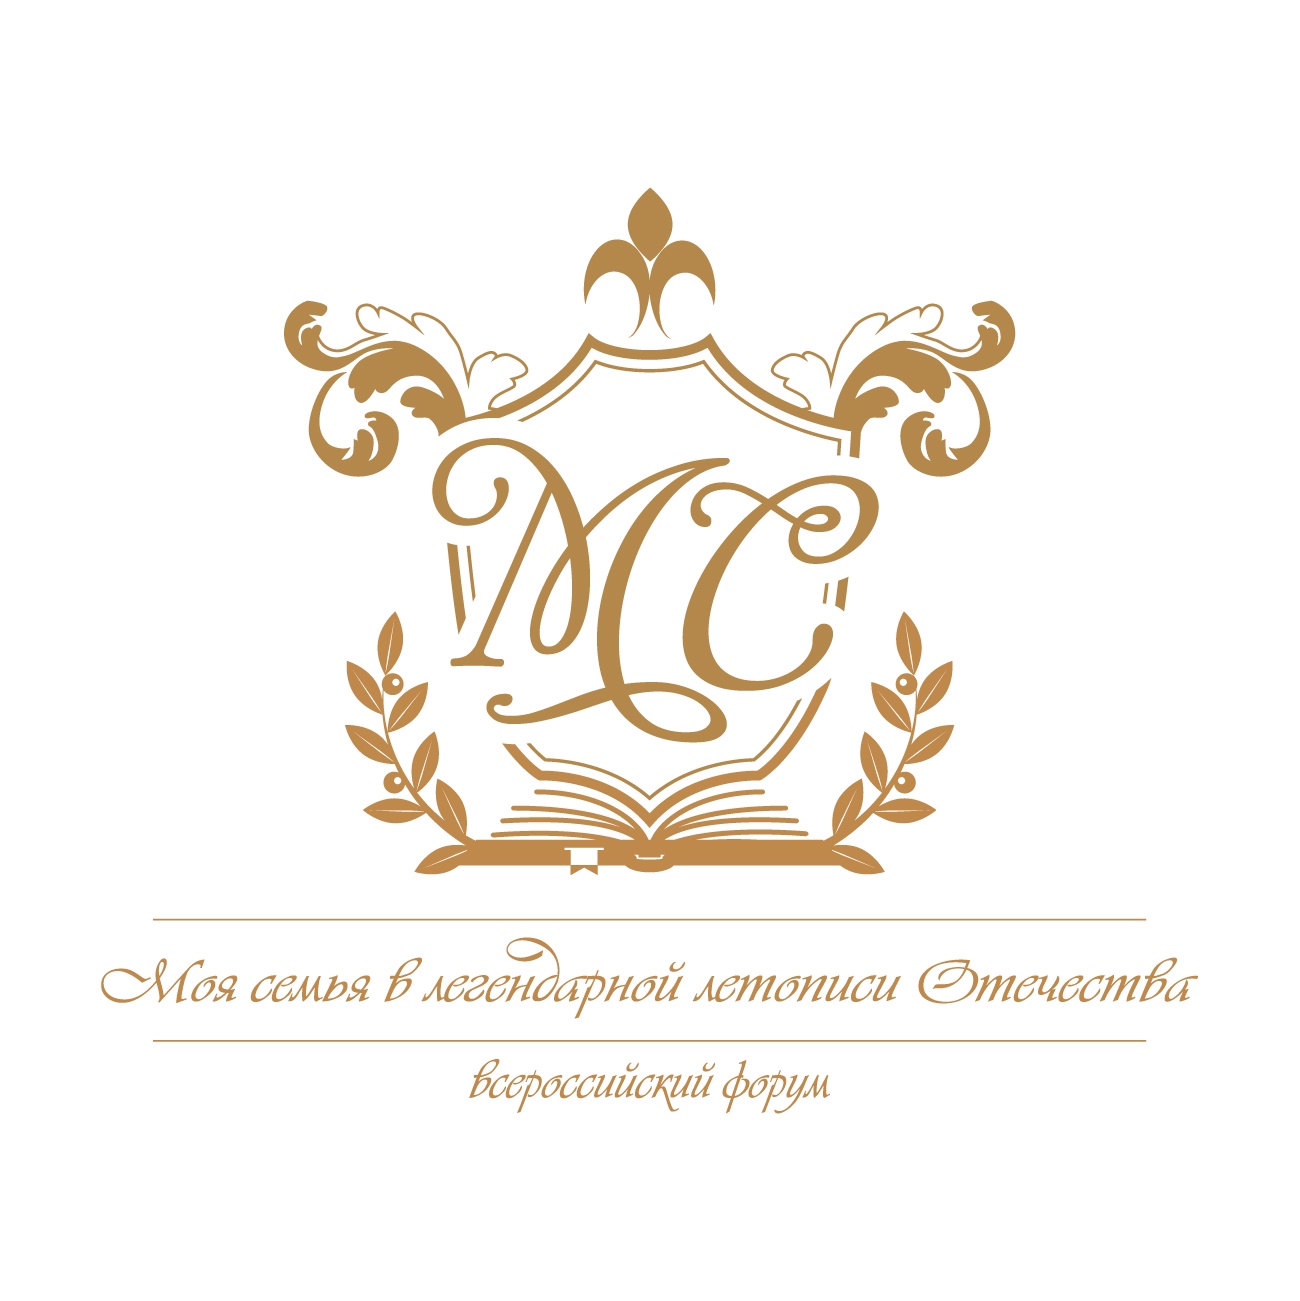 Жители Белгородского района приглашаются к участию во втором Всероссийском форуме «Моя семья в легендарной летописи Отечества»